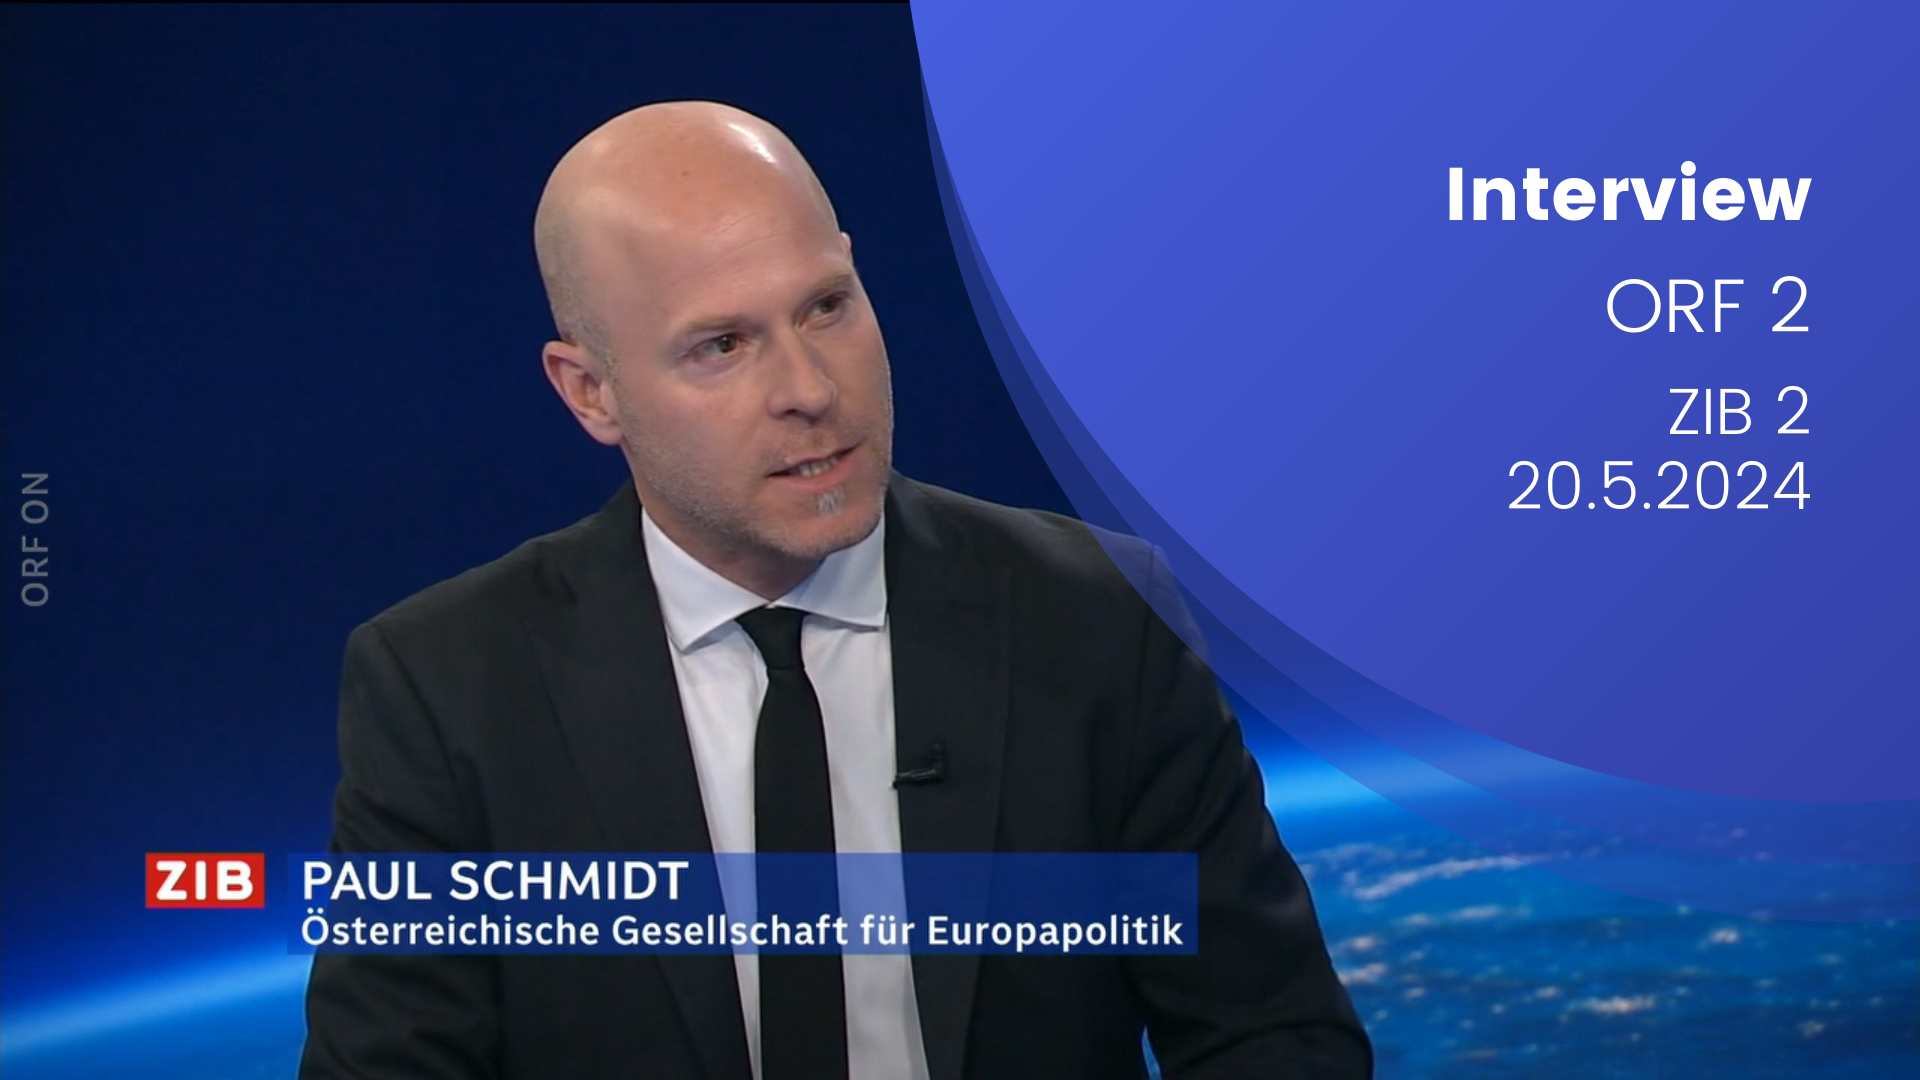 Paul Schmid im ZIB 2 Interview auf ORF 2 am 20.05.2024. Man sieht Schmidt im ZIB Studio mit seinem eingeblendeten Namen.